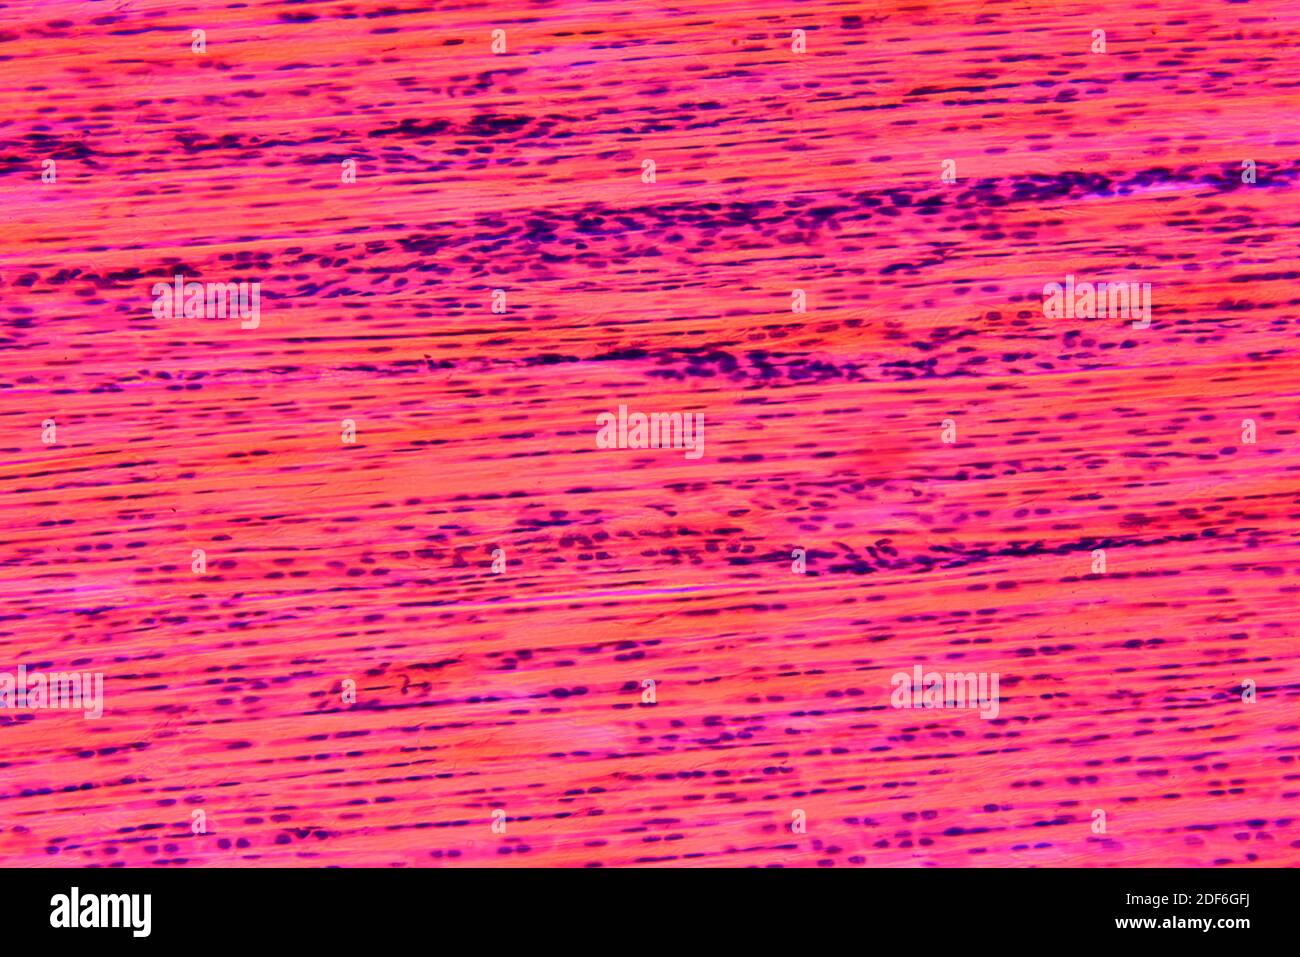 Tissu conjonctif dense ou tissu fibreux dense présentant des fibroblastes,  des fibres de collagène et une matrice. Microscope optique X200 Photo Stock  - Alamy